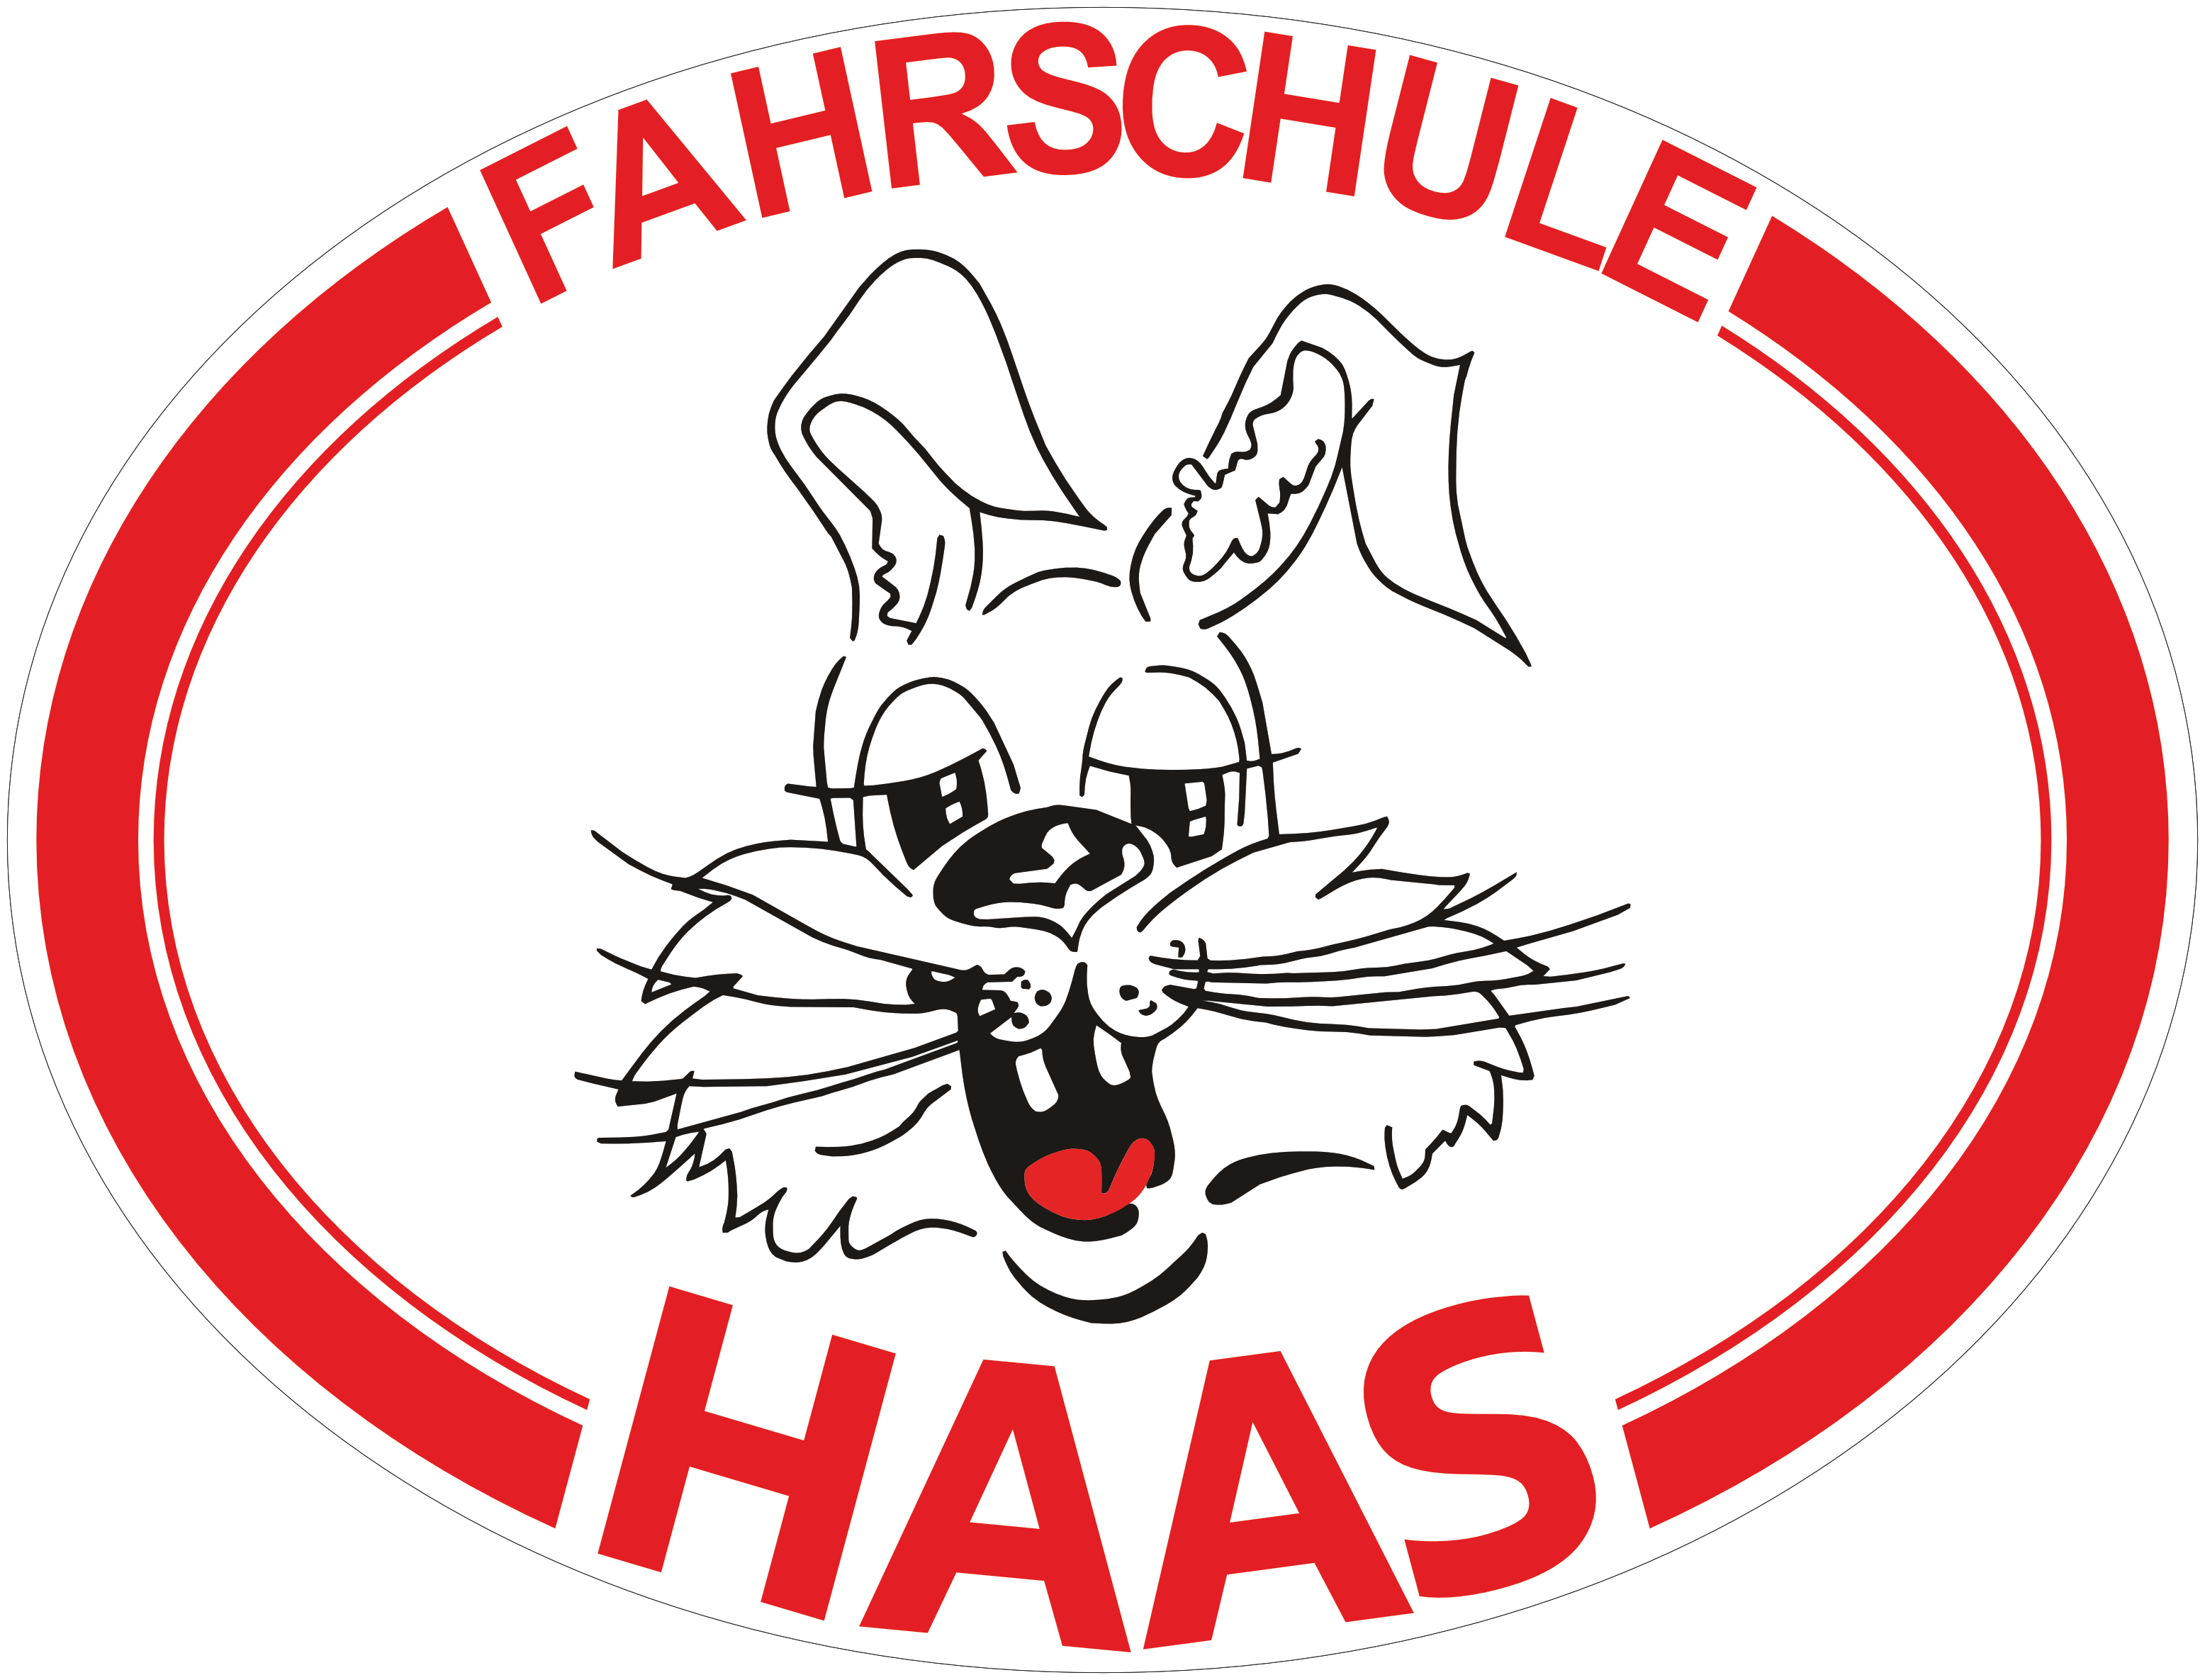 (c) Fahrschule-haas.de